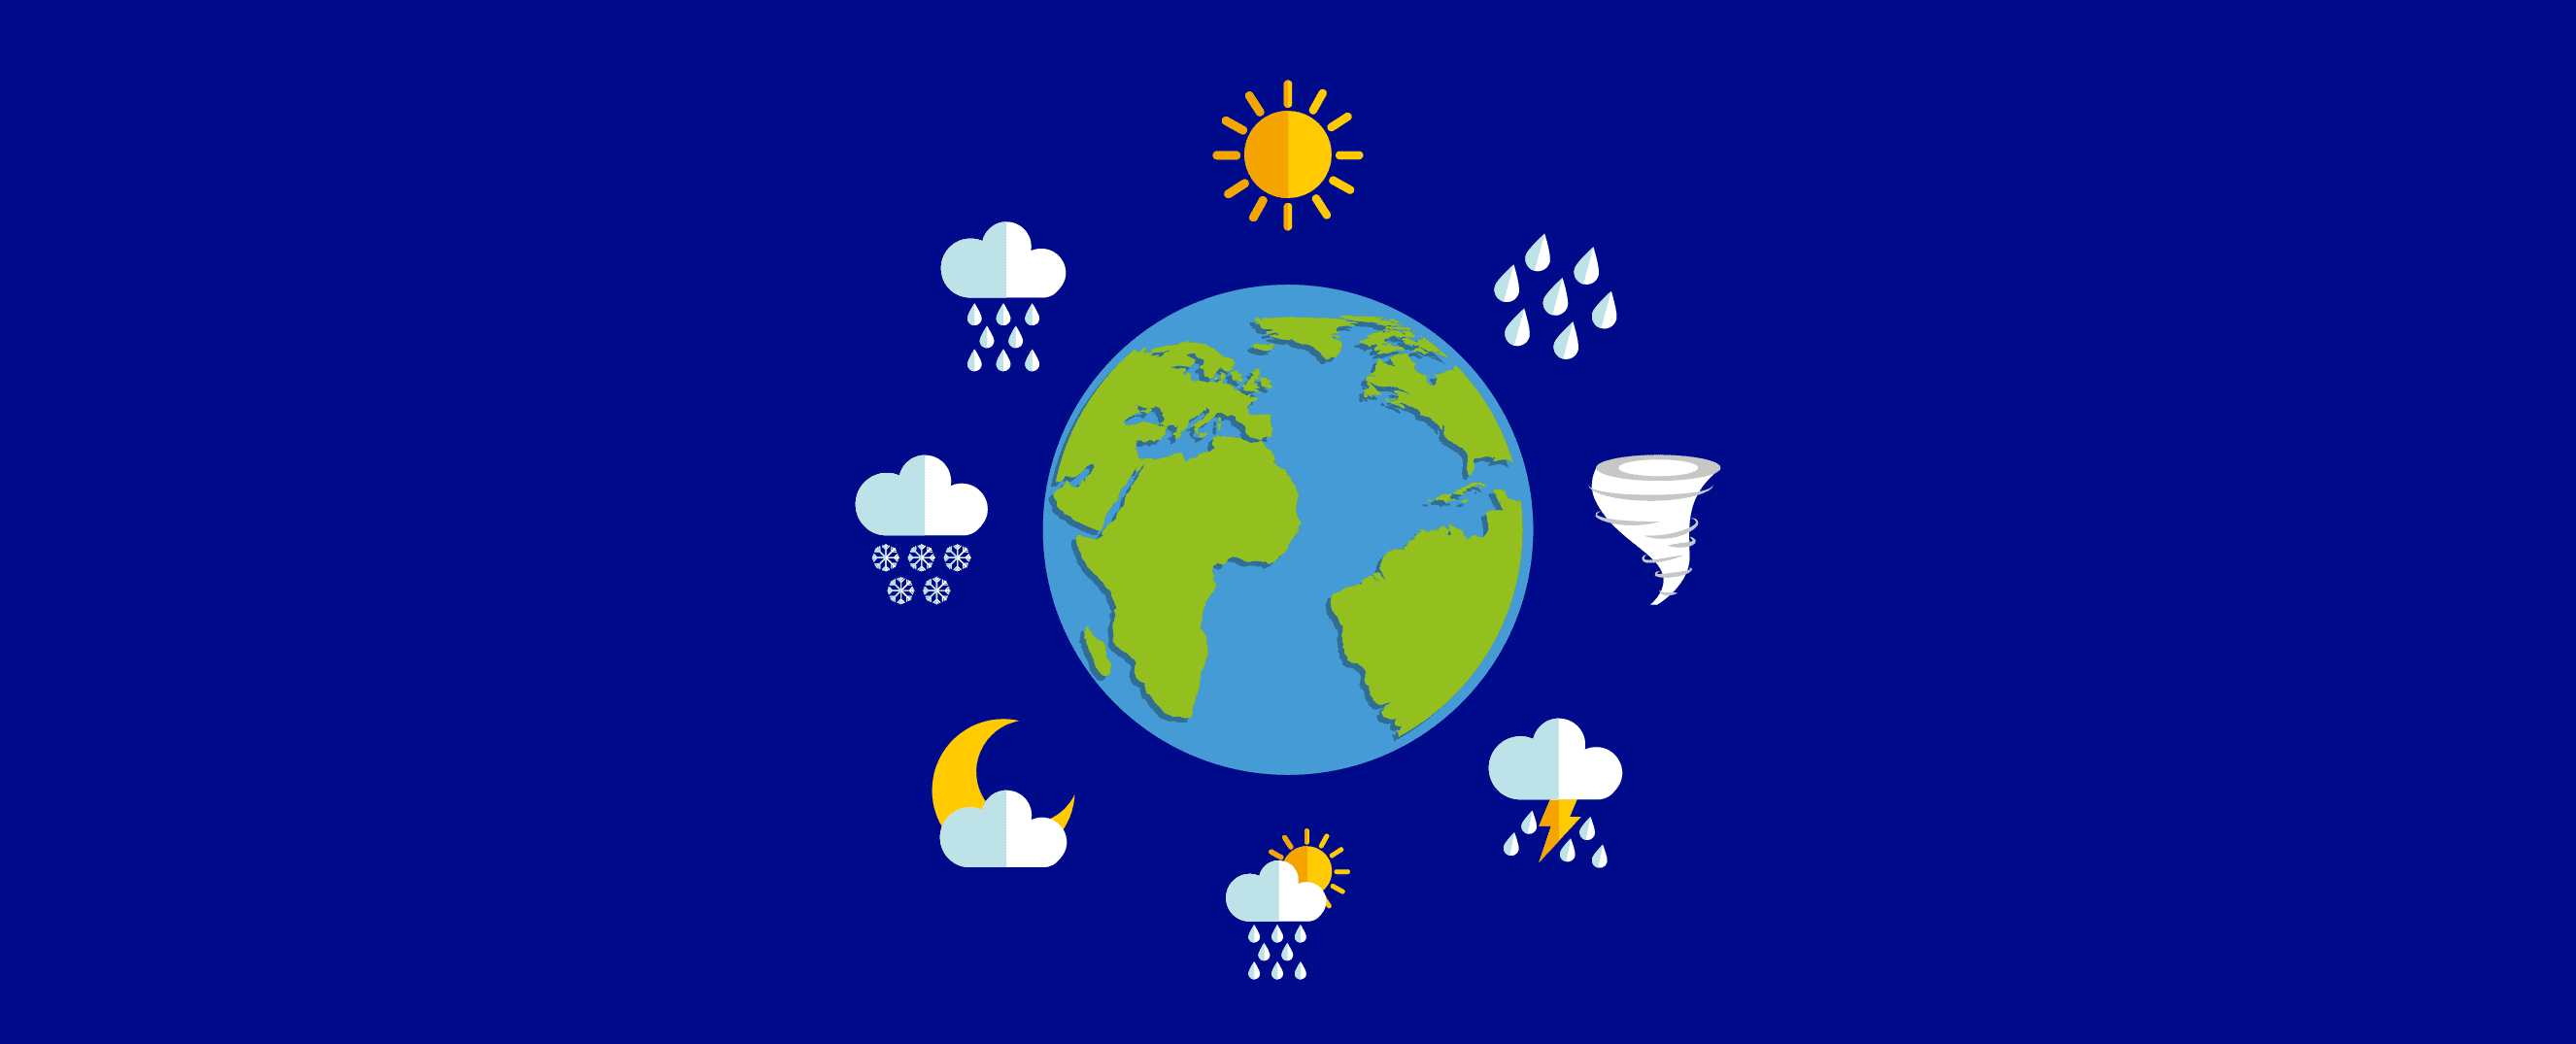 Ilustração de diversos fenômenos climáticos ao redor do globo terrestre.